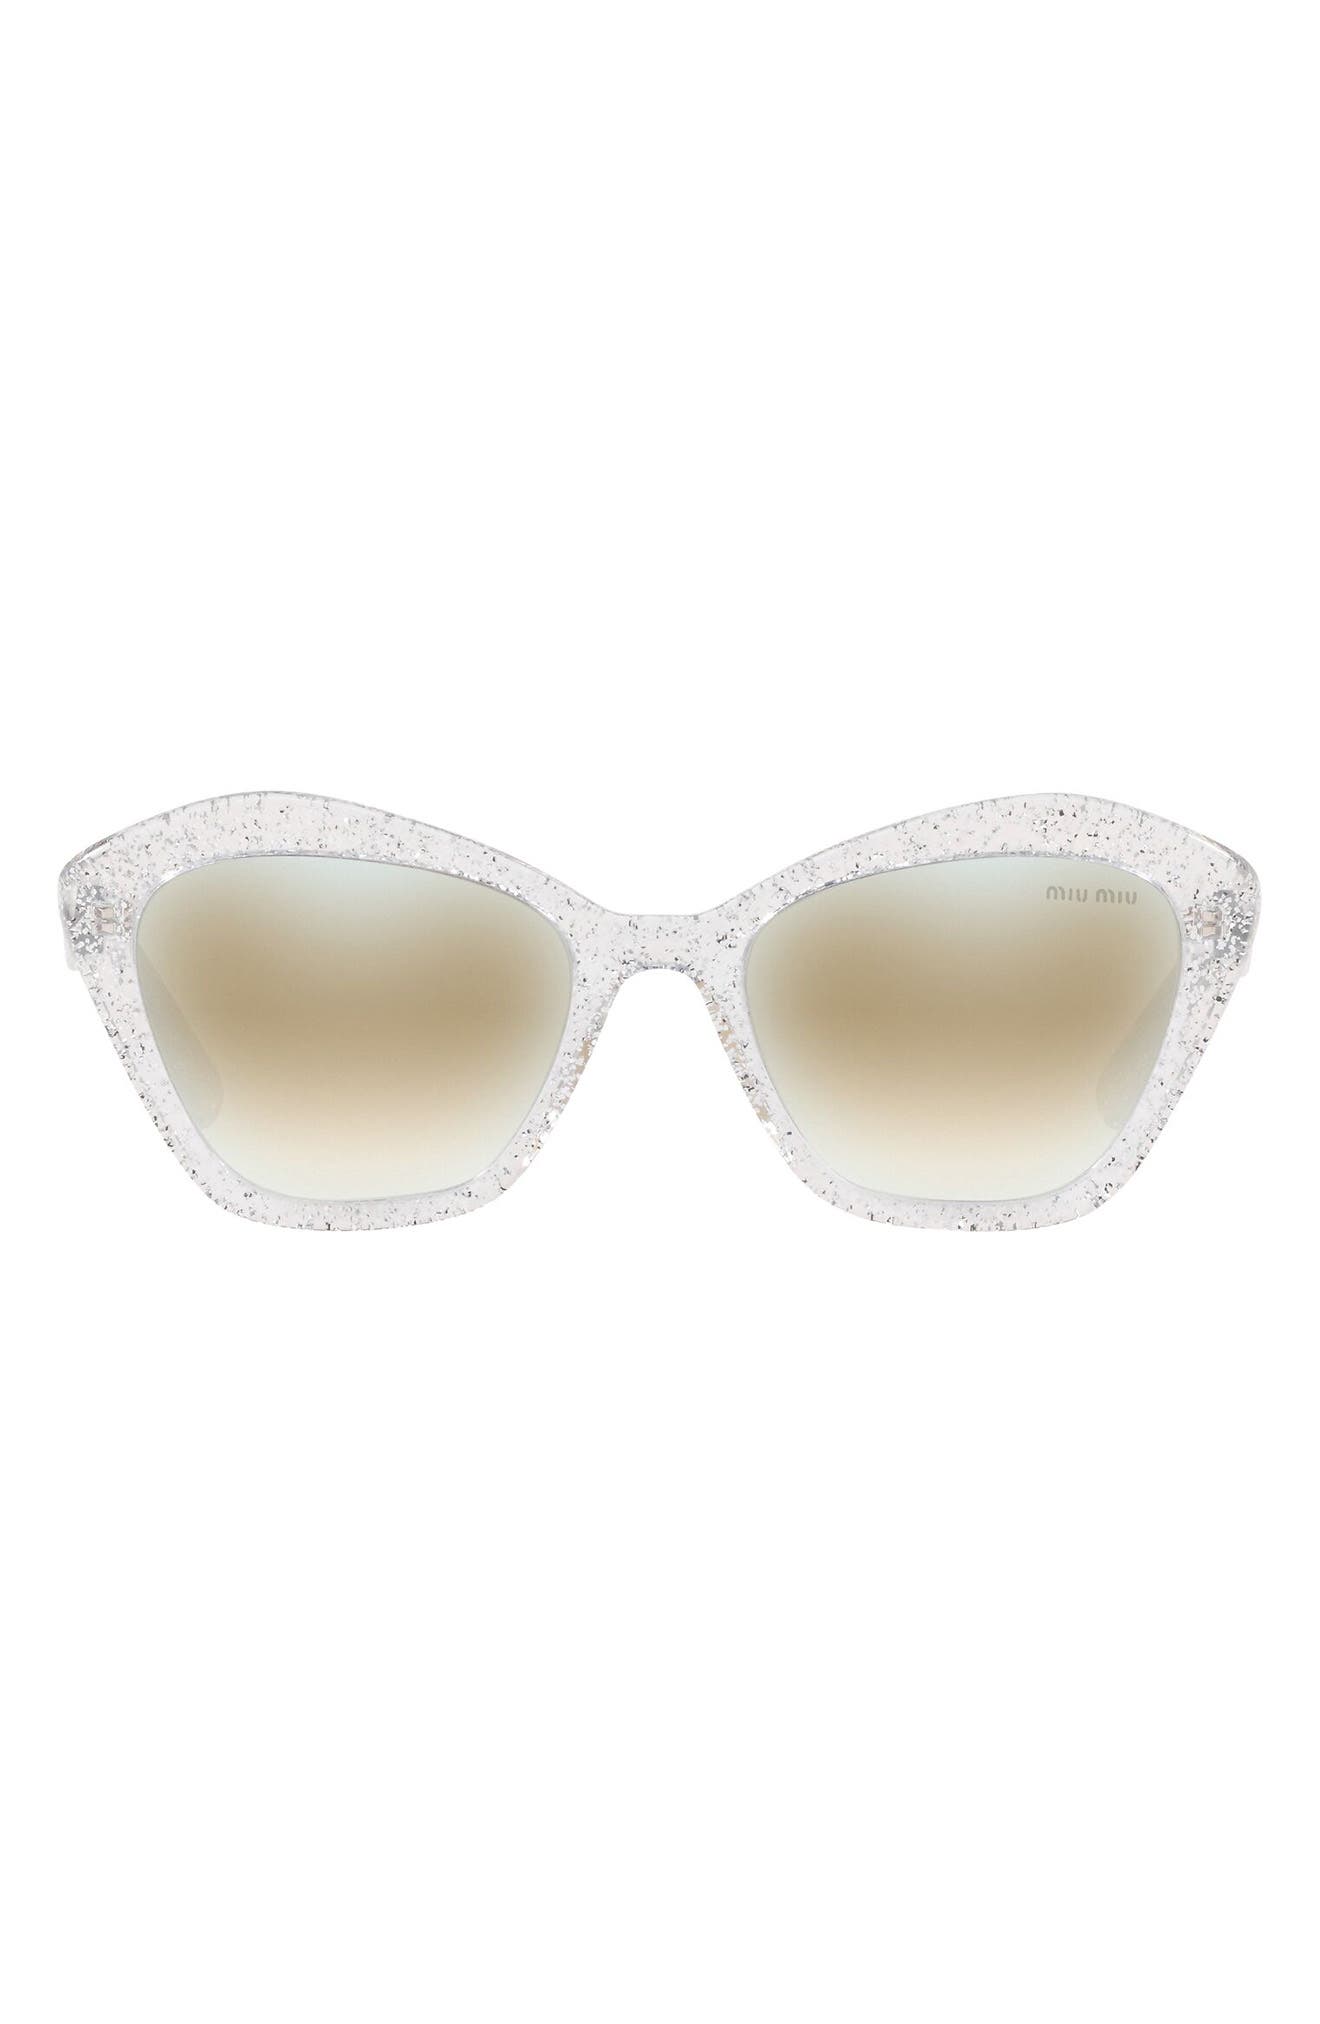 Miu Miu 55mm Irregular Sunglasses In Silver